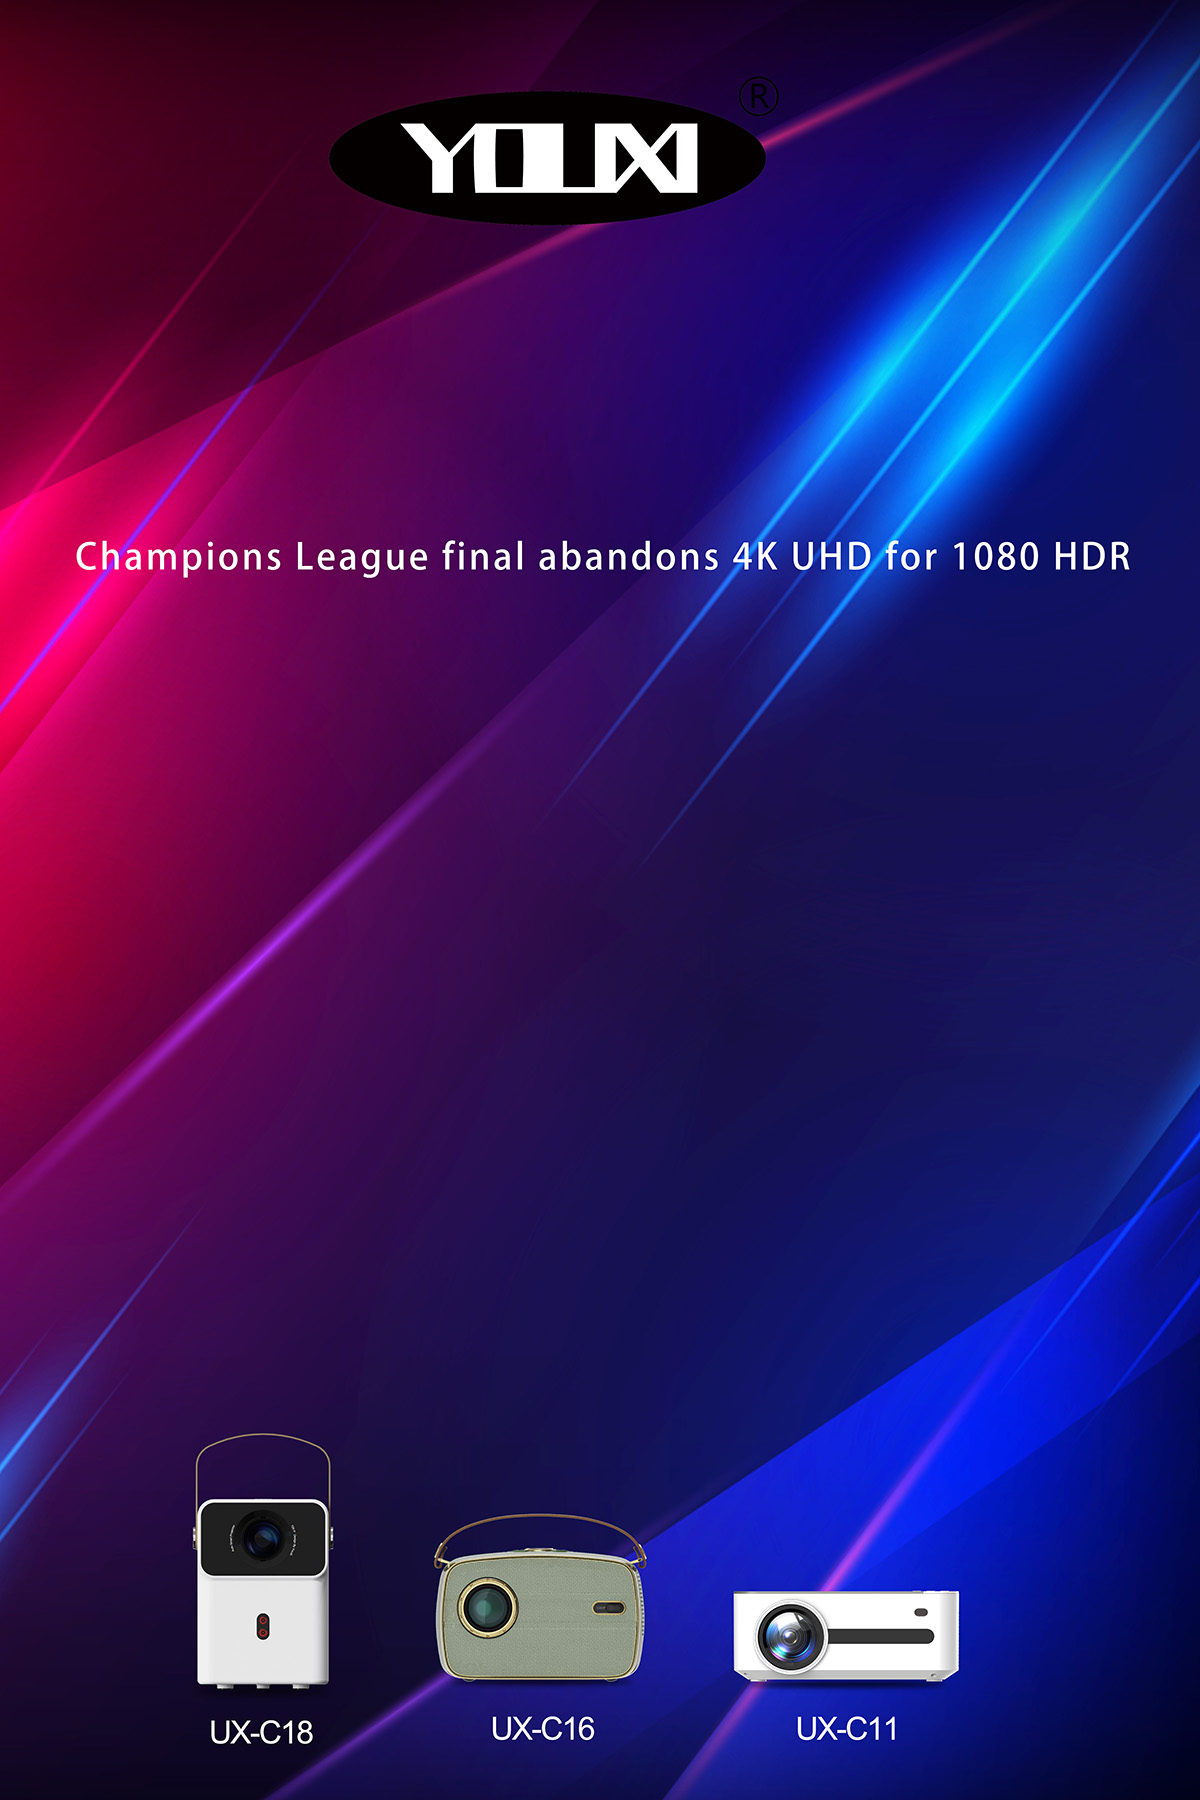 La final de la Liga de Campeones abandona el 4K UHD por 1080 HDR